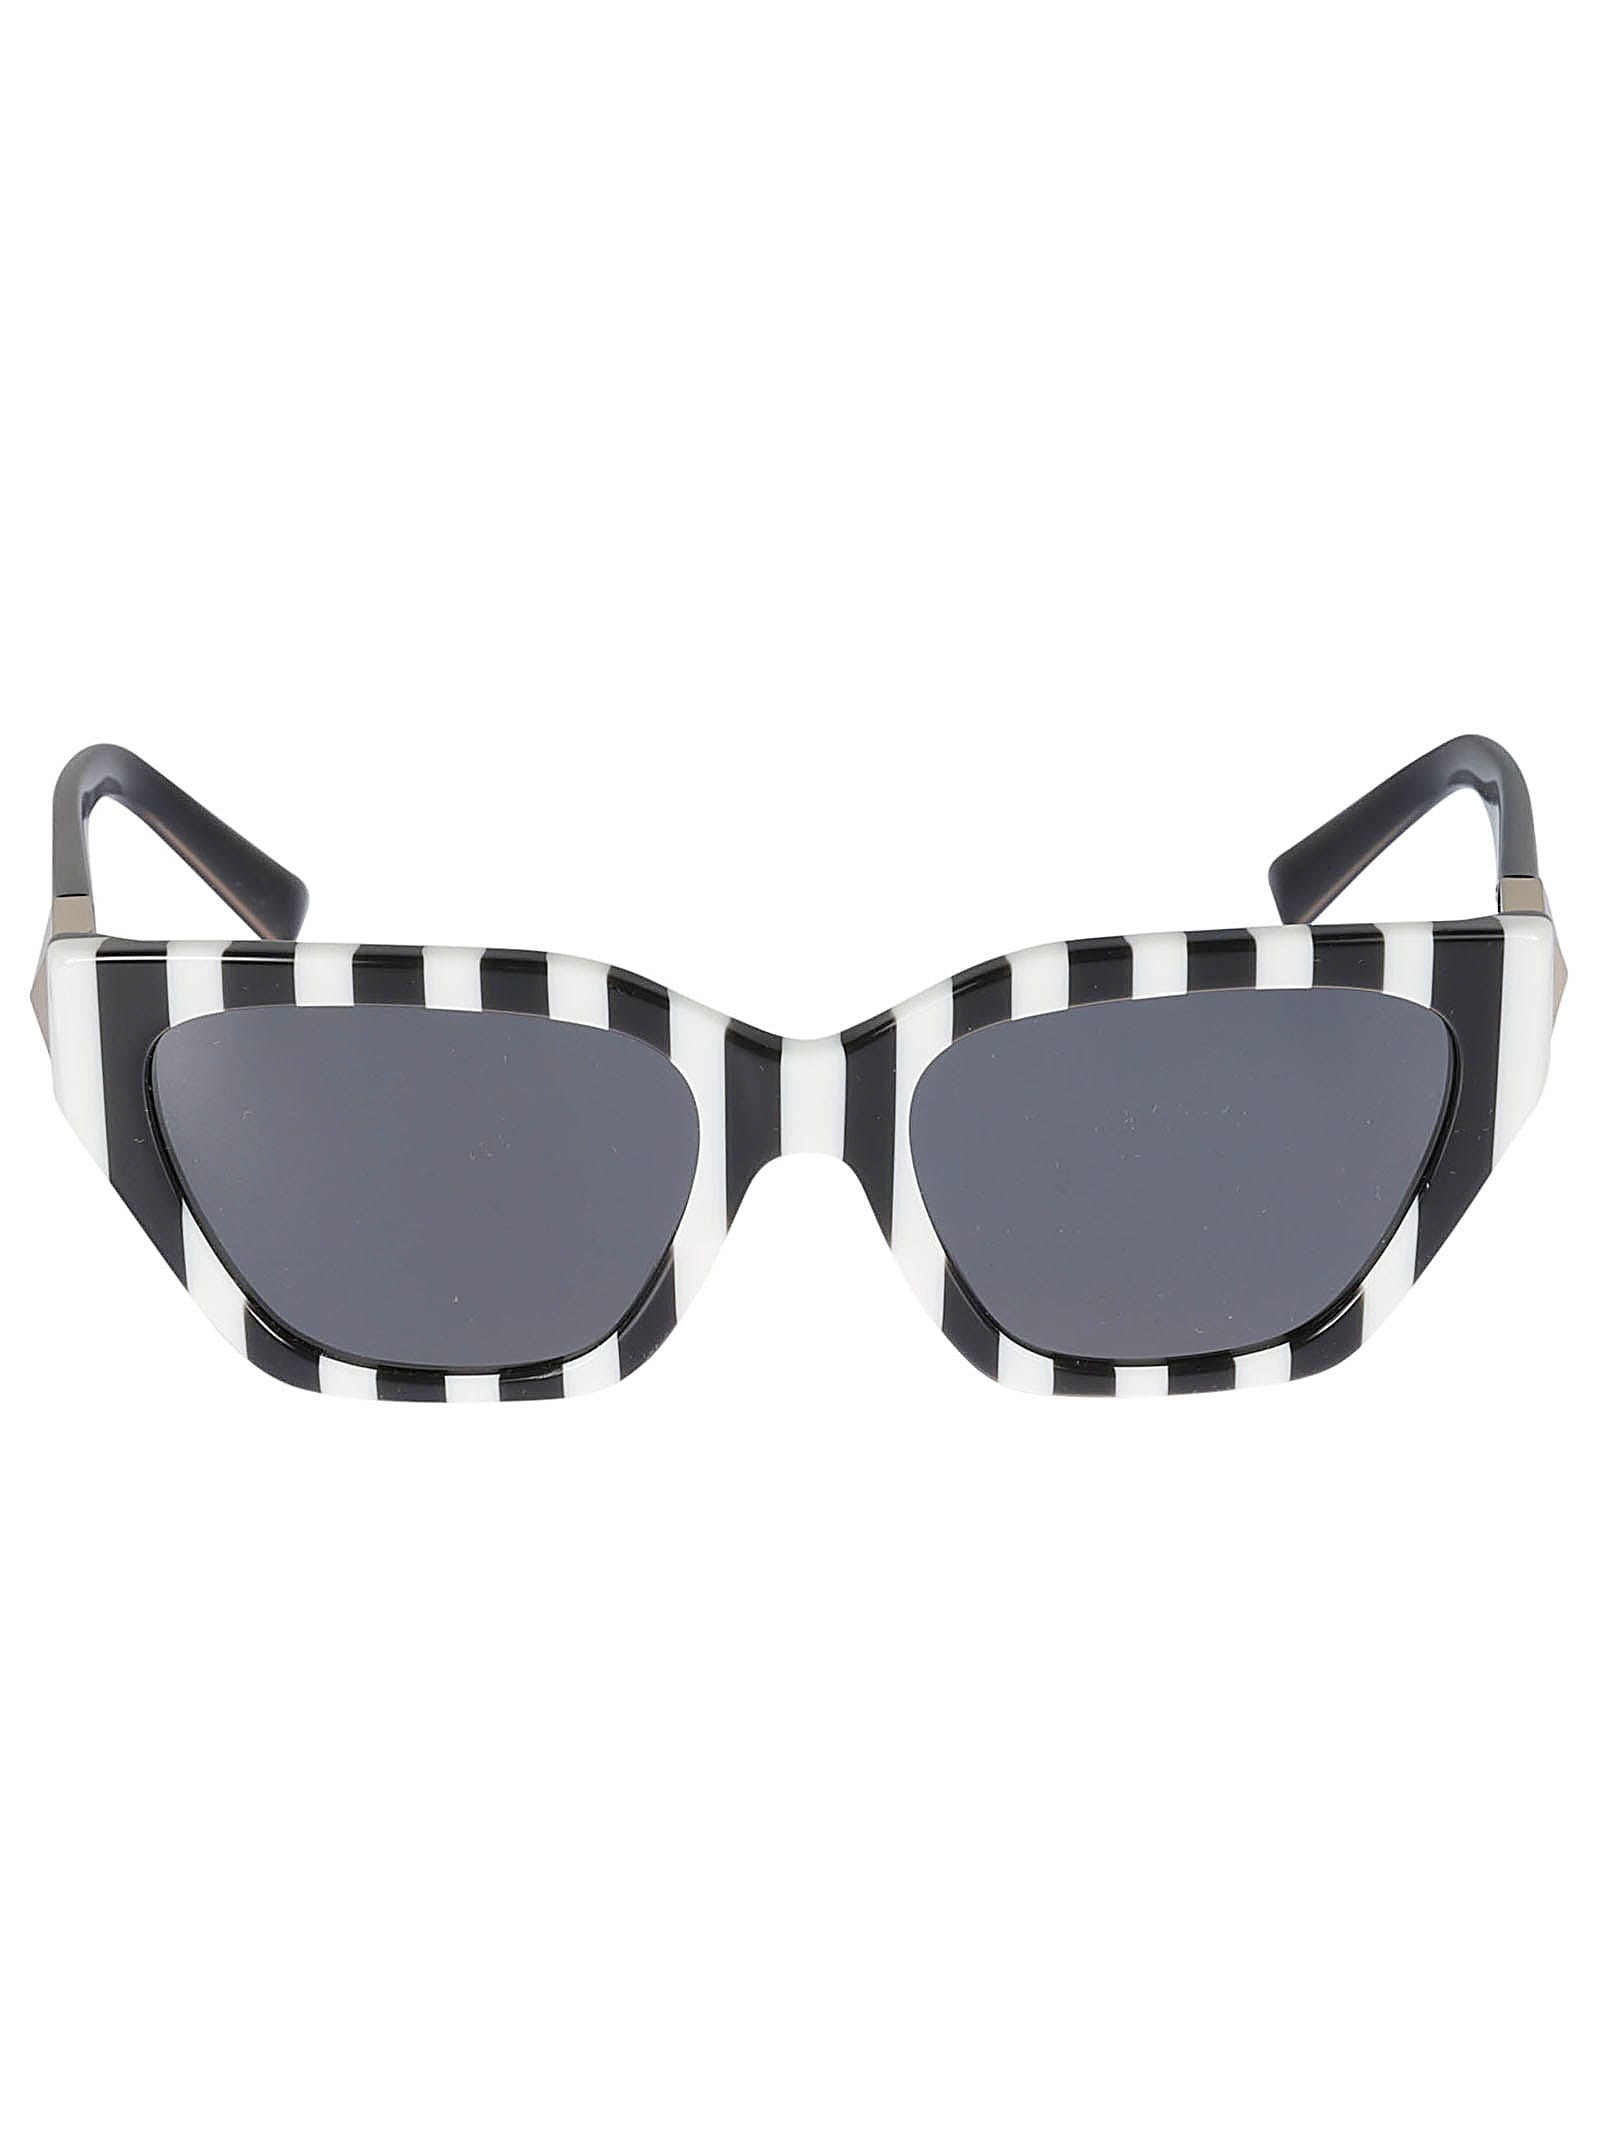 Valentino Sole518187 Sunglasses